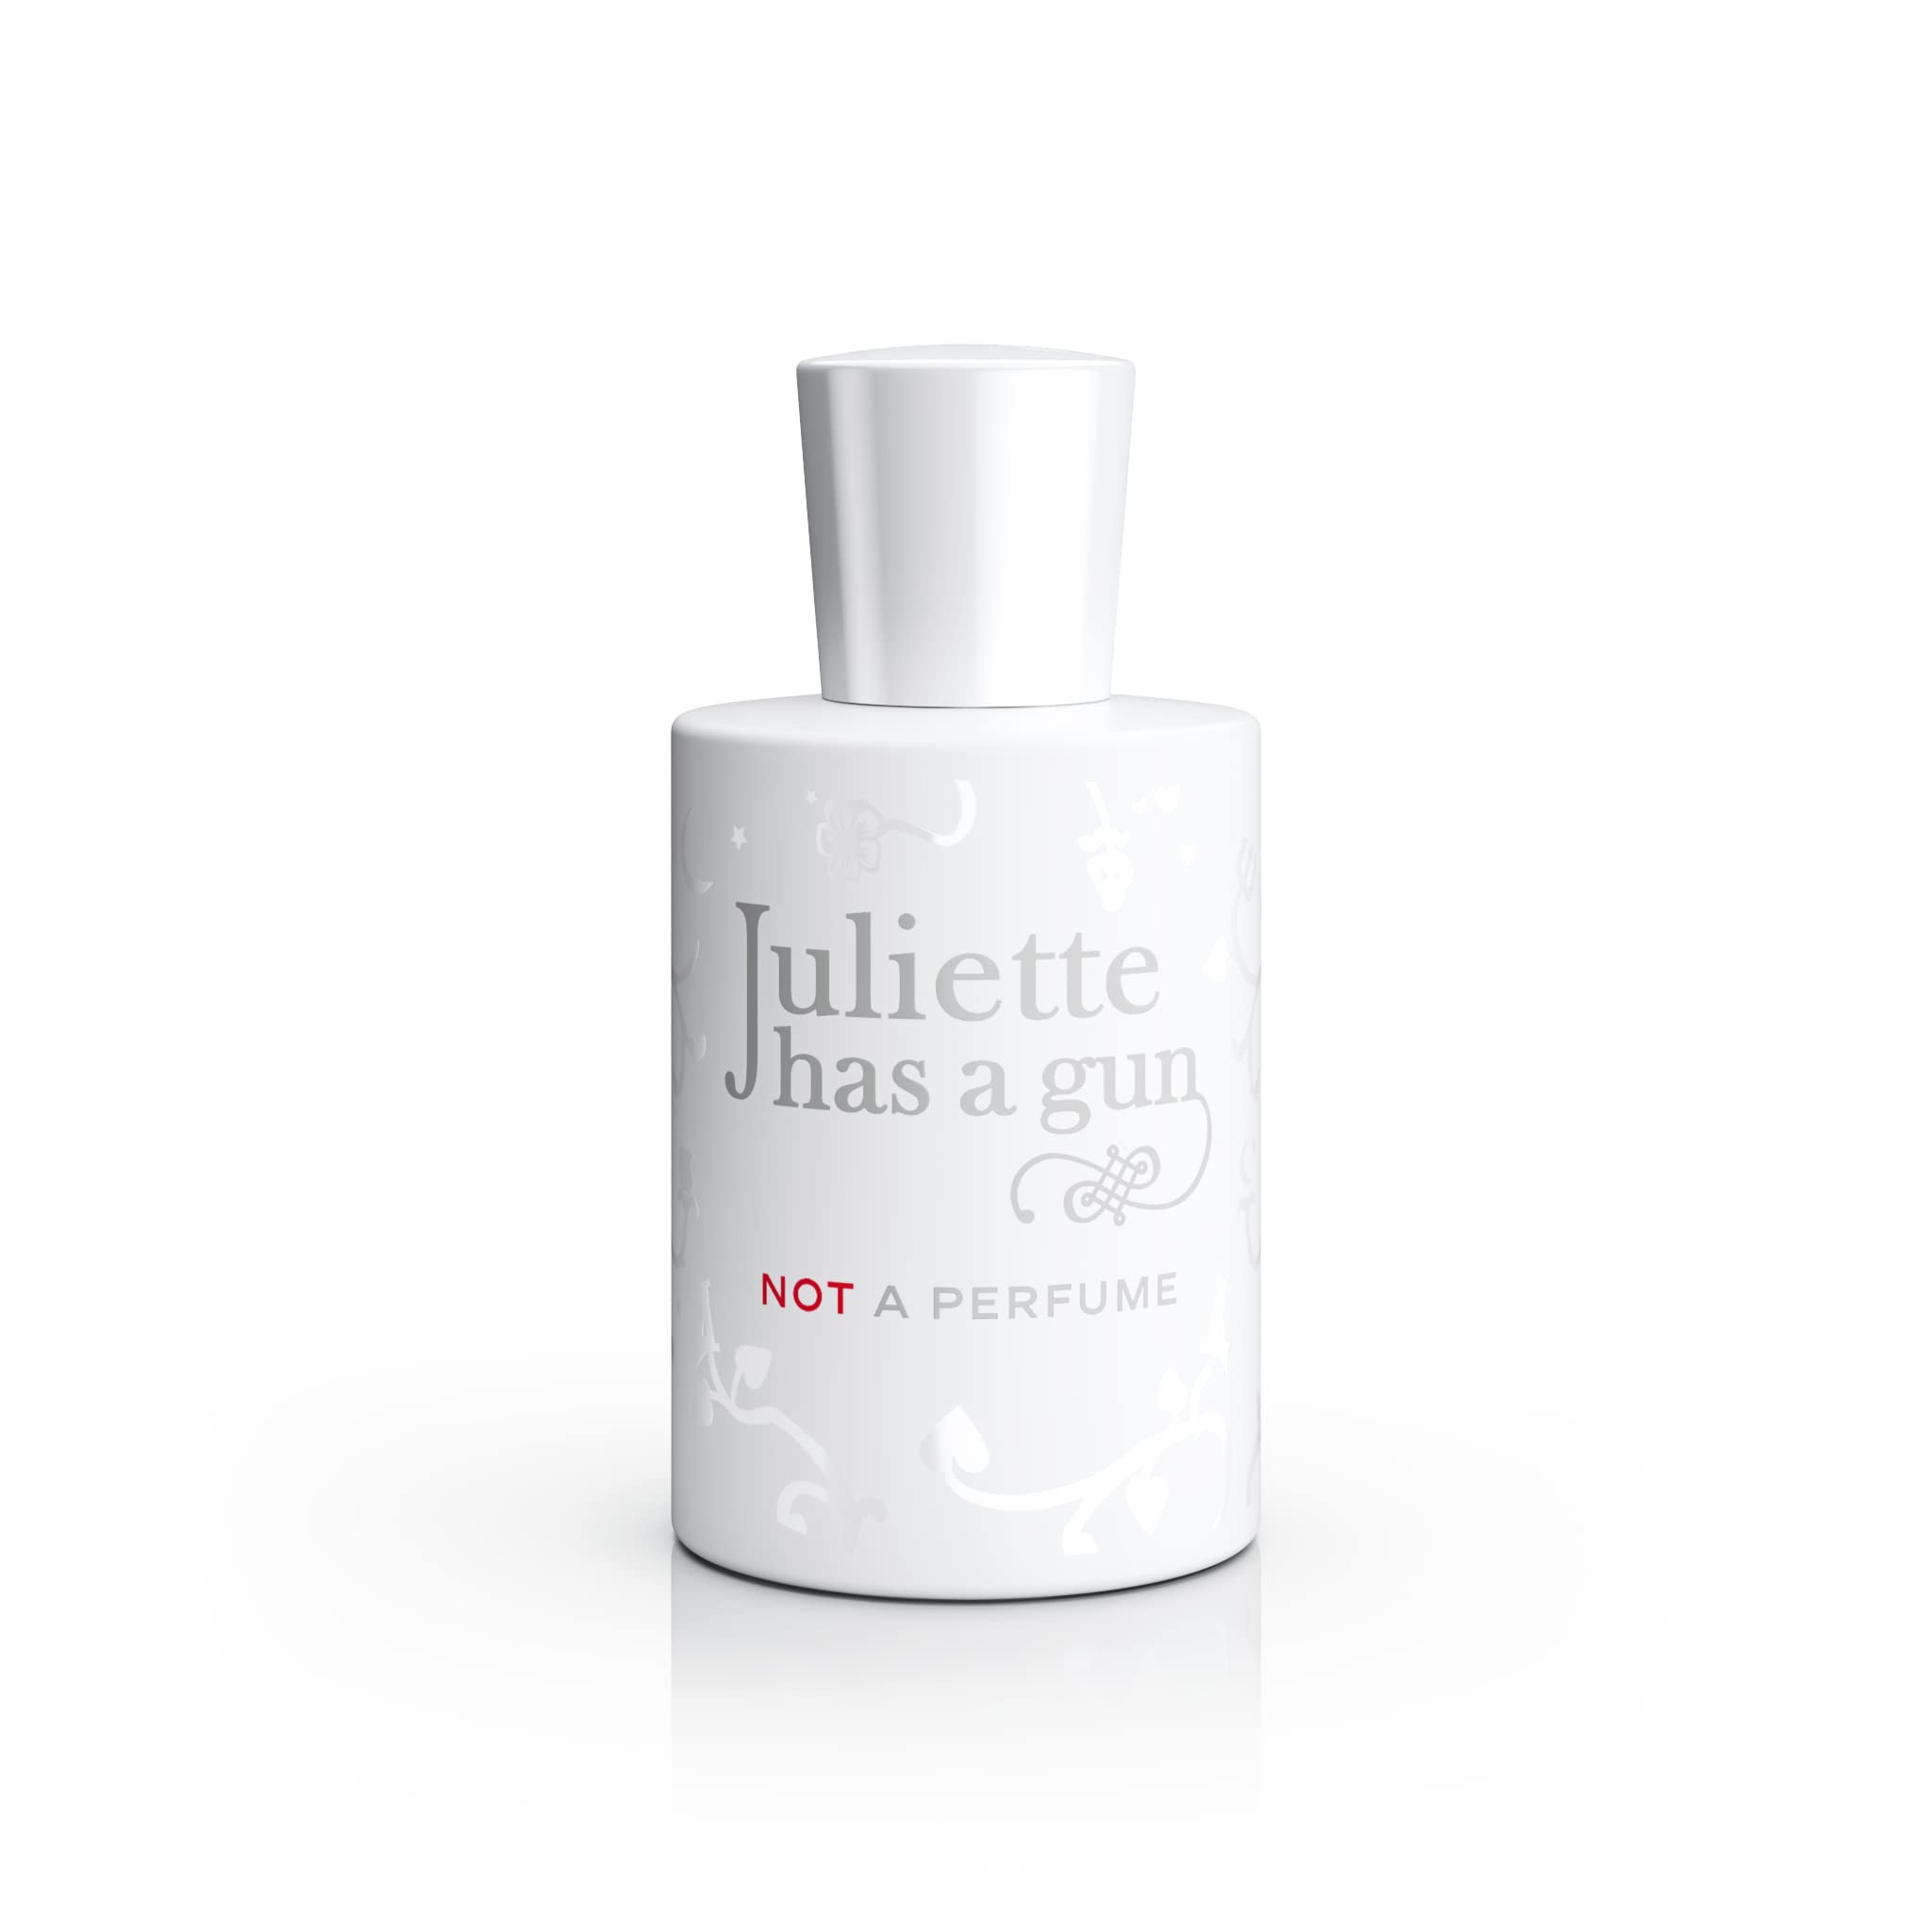 Juliette has a gun Not A Perfume femme/women, Eau de Parfum Spray, 1er Pack (1 x 50 ml), Holz